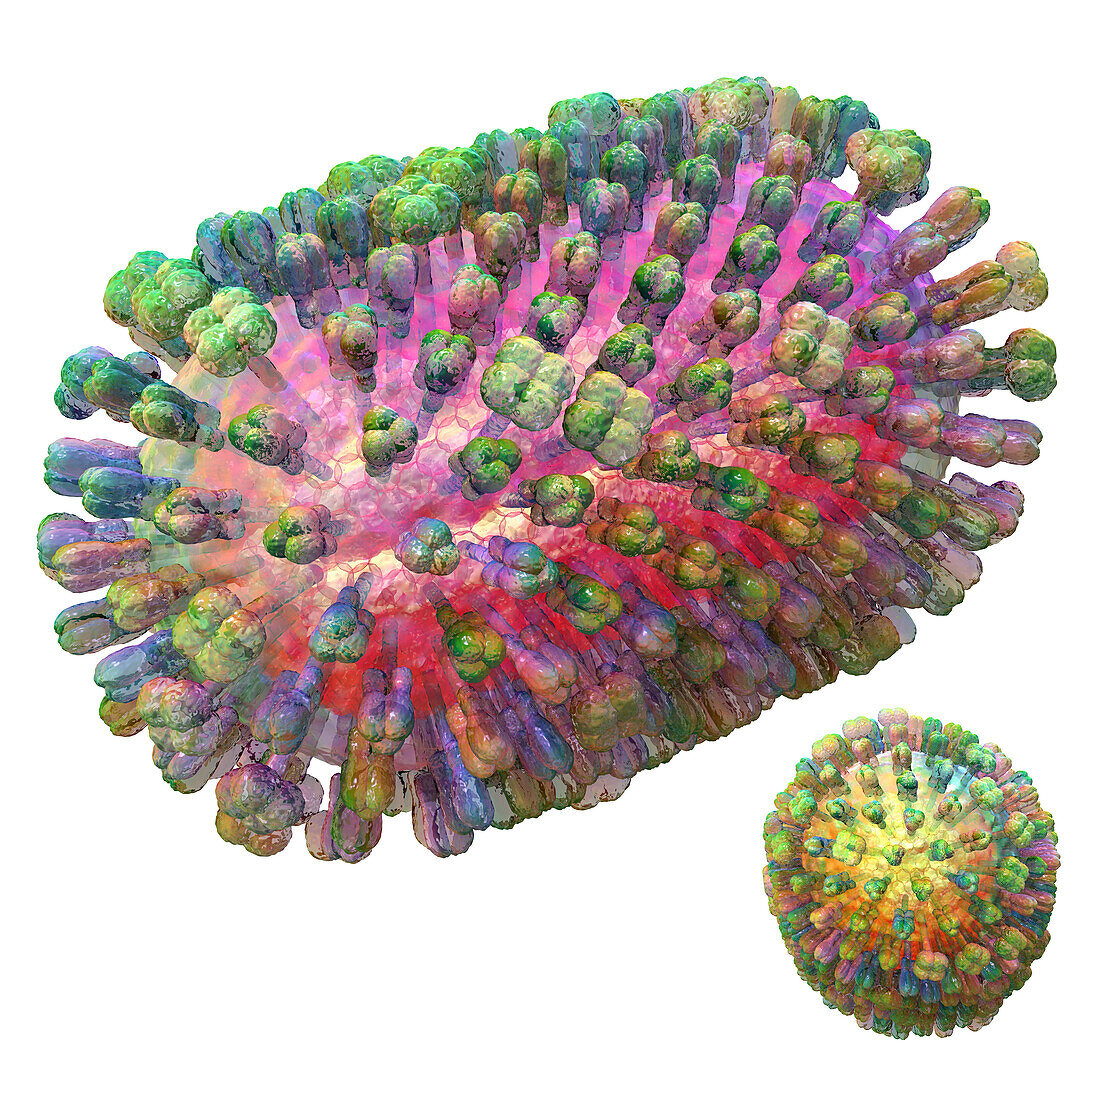 Influenza virus particles, illustration